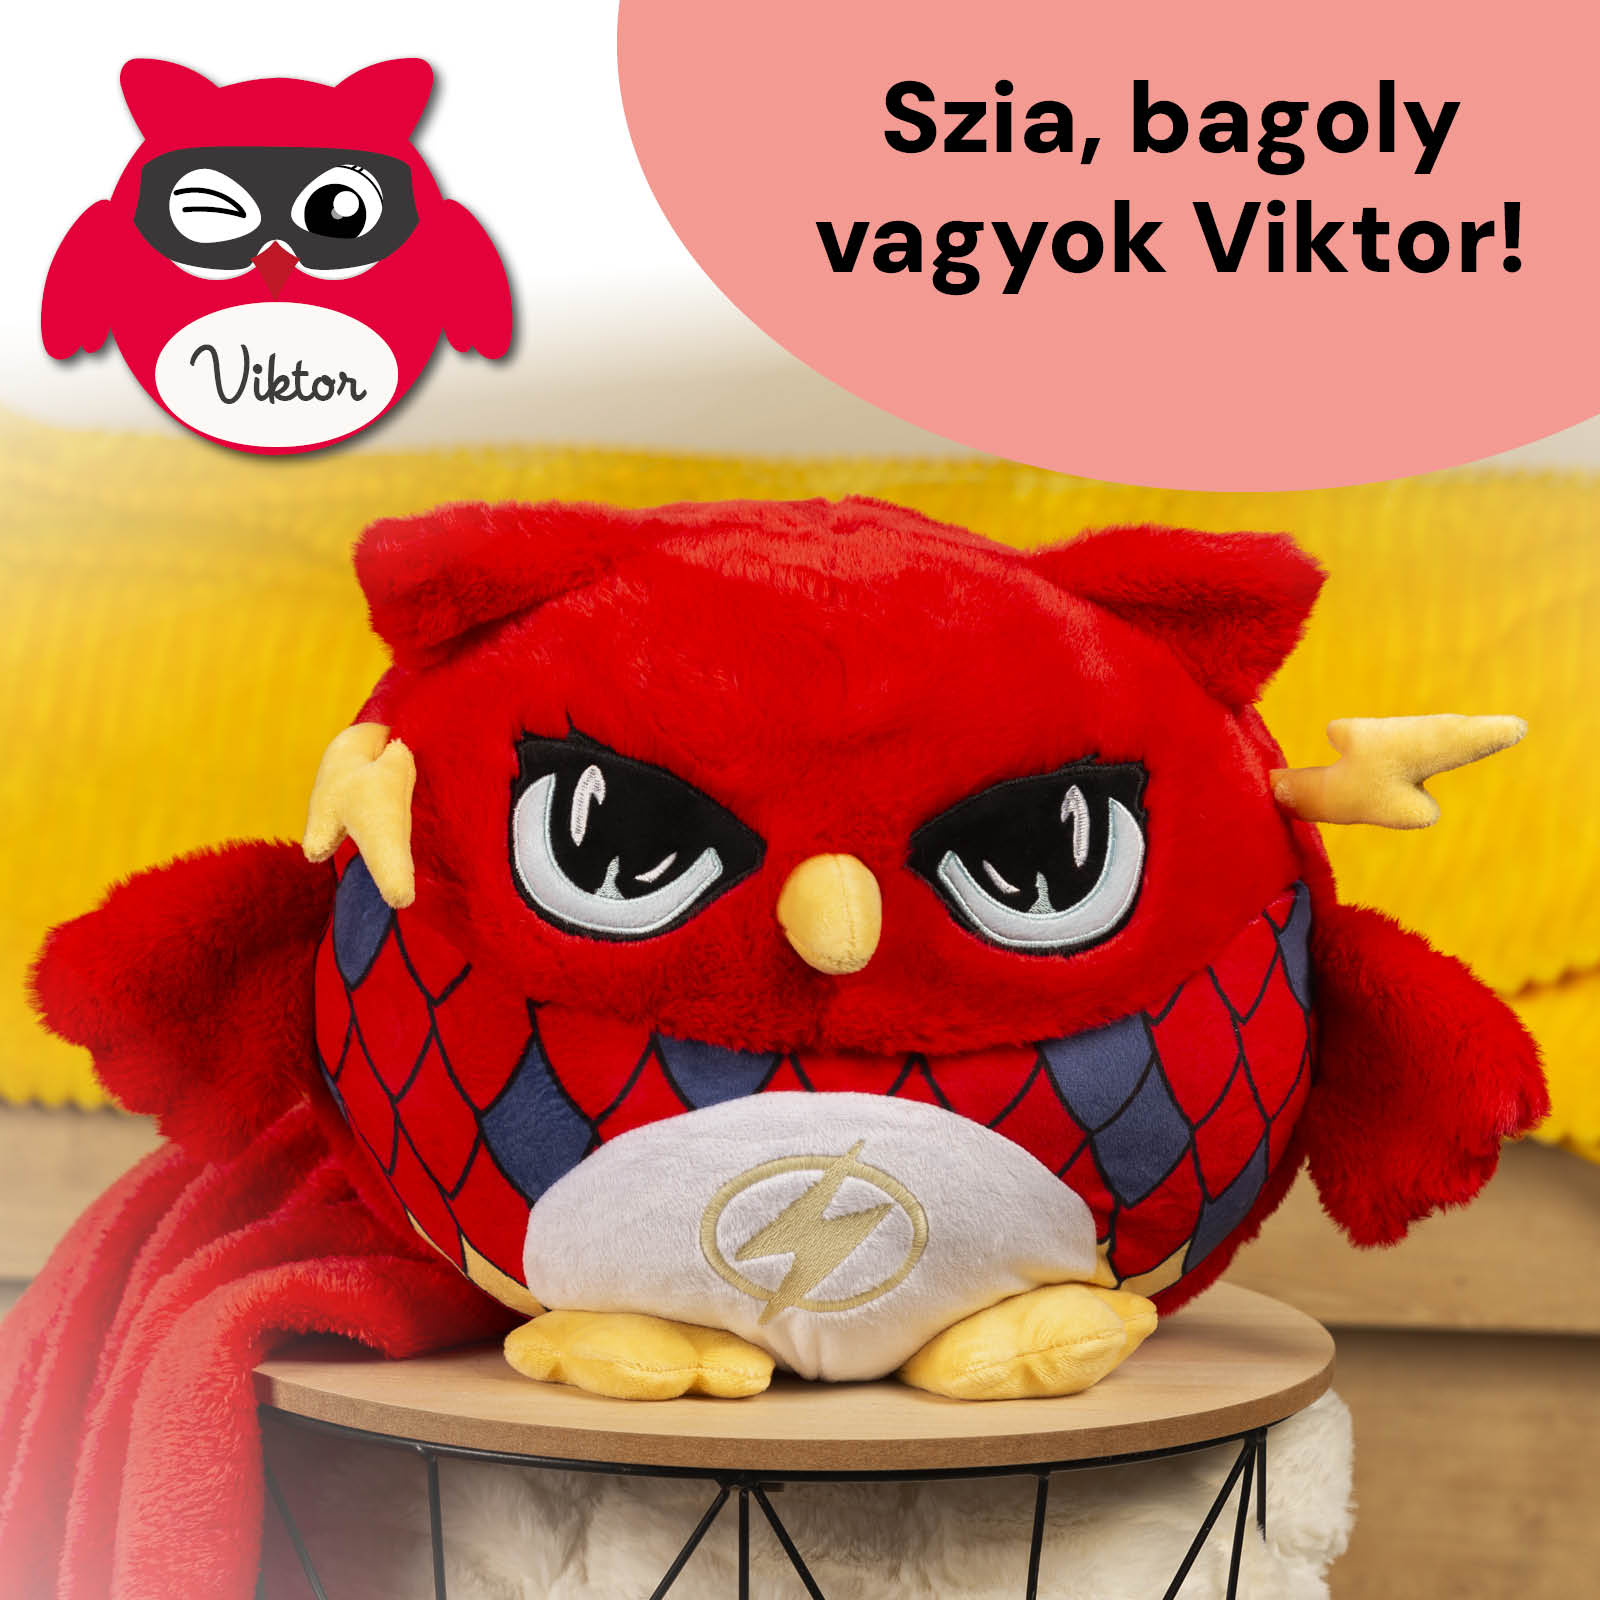 Bagoly Viktor apa - 3in1